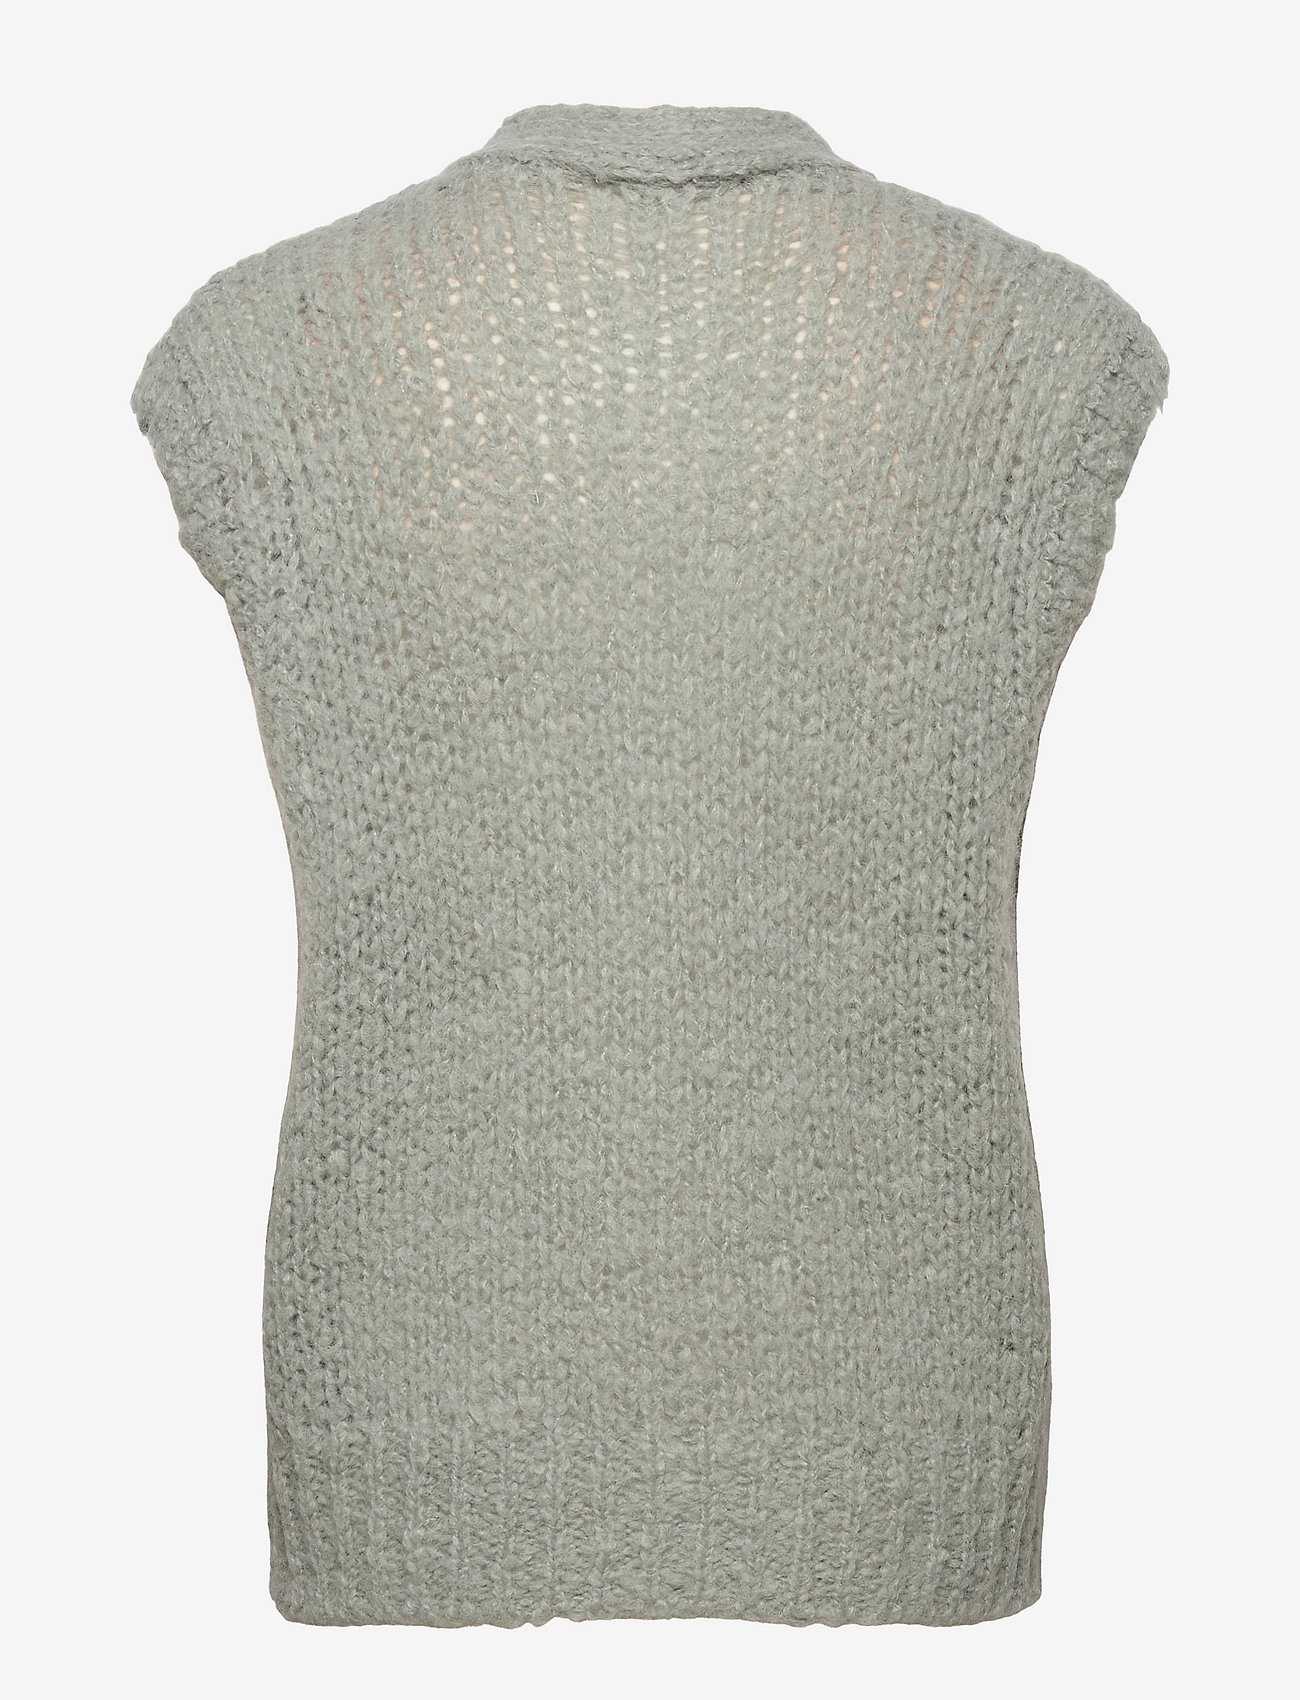 Just Female - Erida knit vest - knitted vests - pale aqua - 1